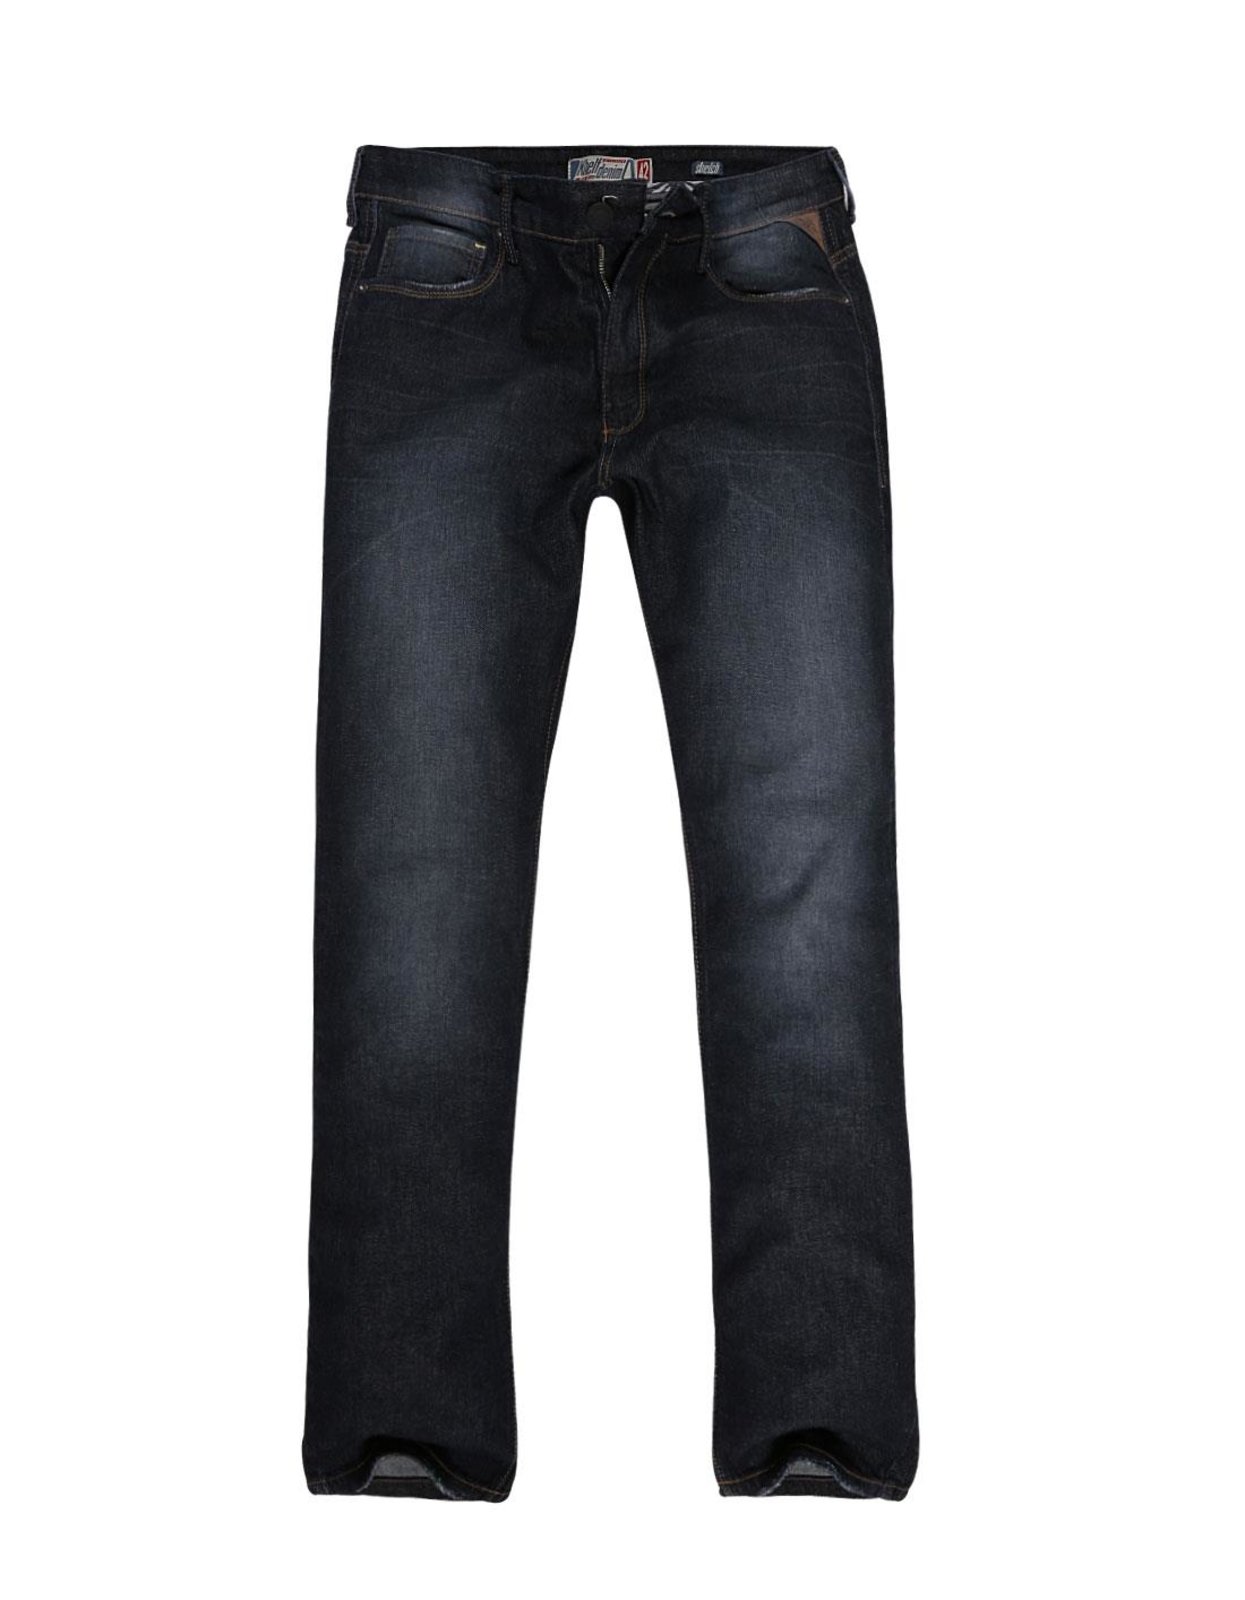 dafiti jeans masculino